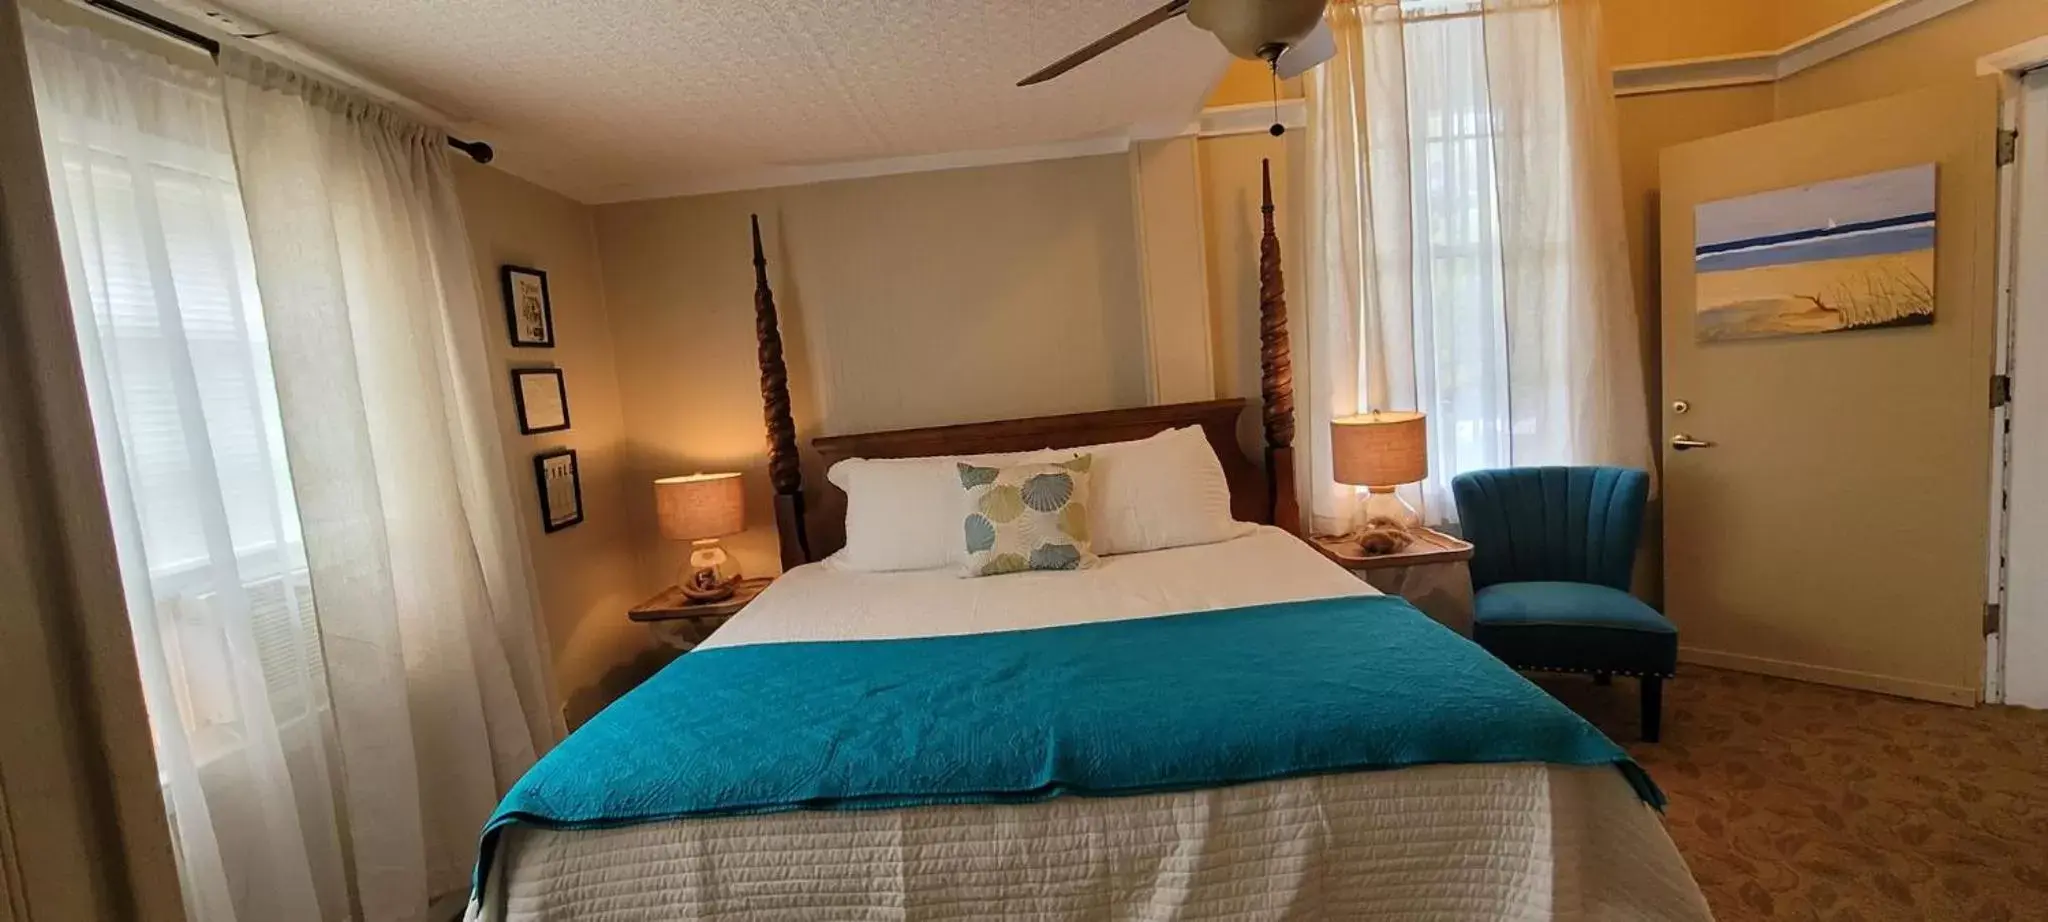 Bed in Tybee Island Inn Bed & Breakfast